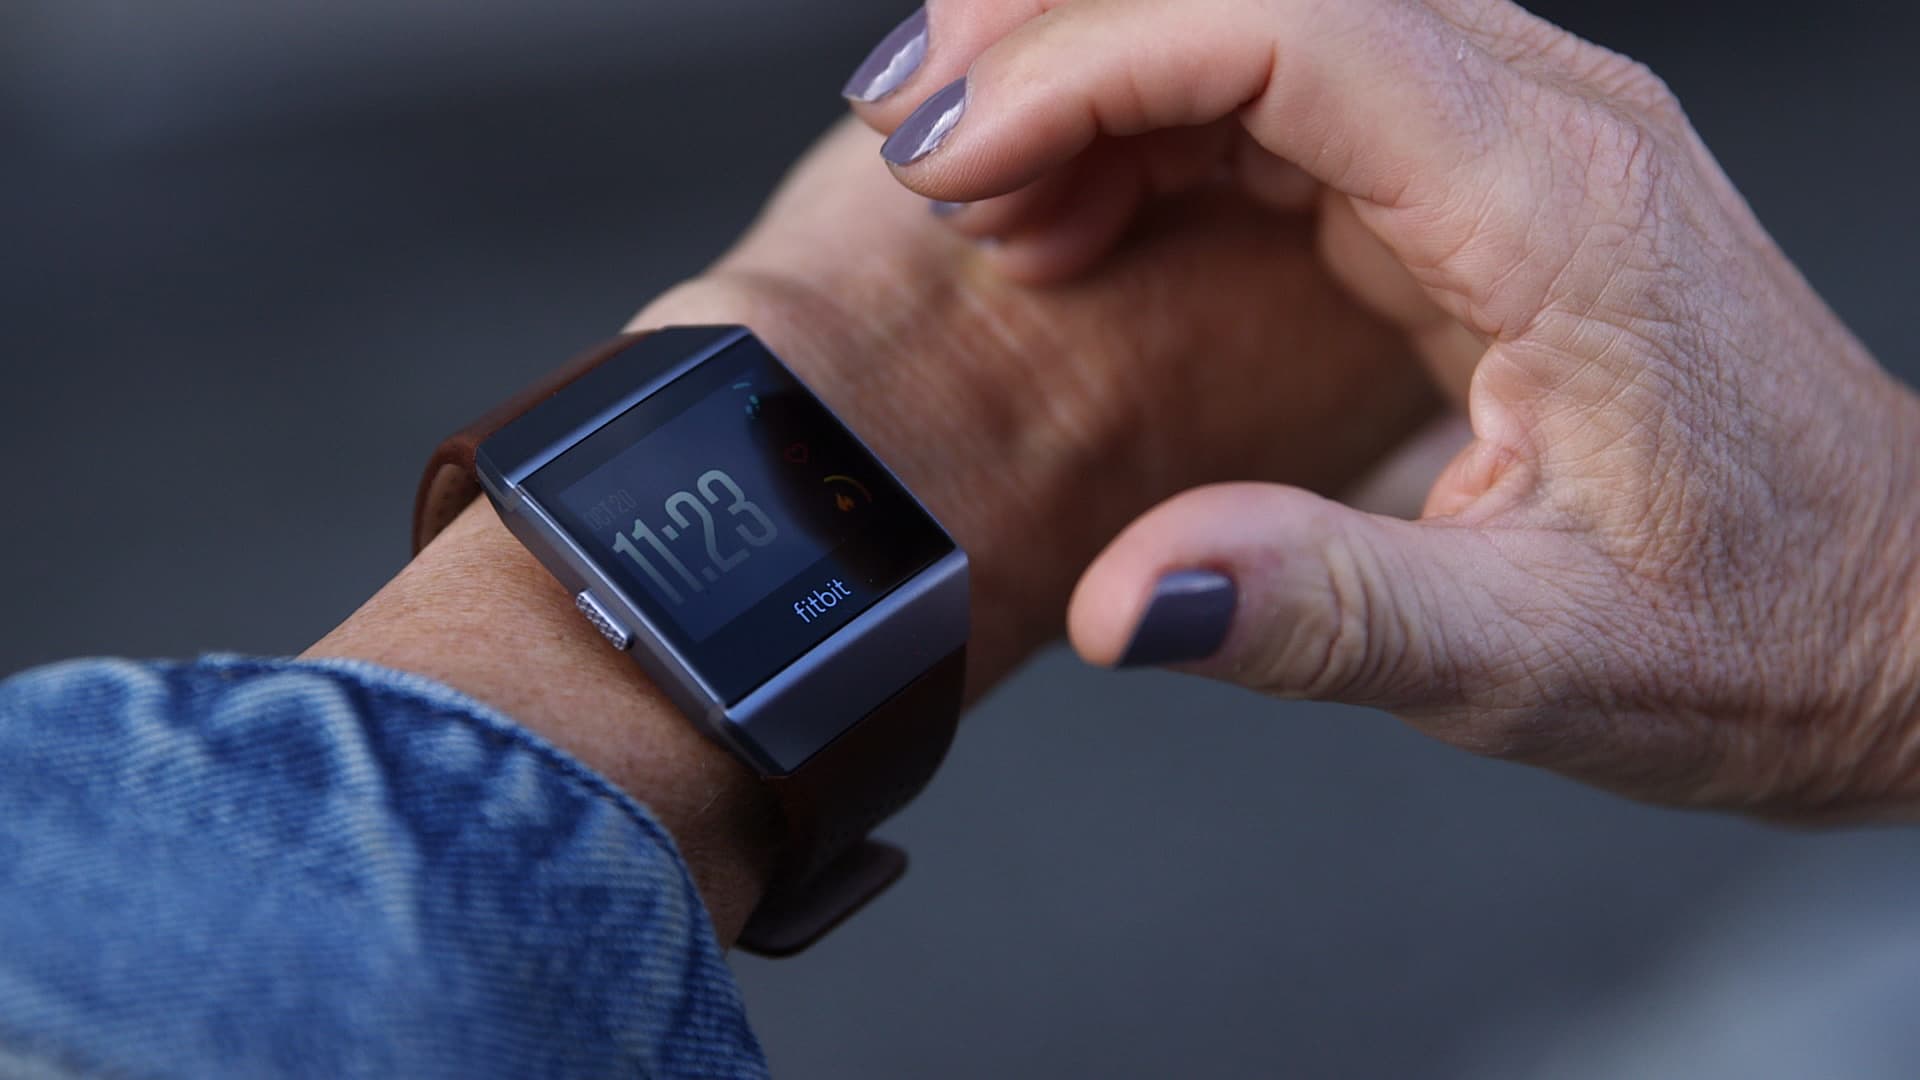 Google's Fitbit recalls 1.7 million smartwatches over burn hazard